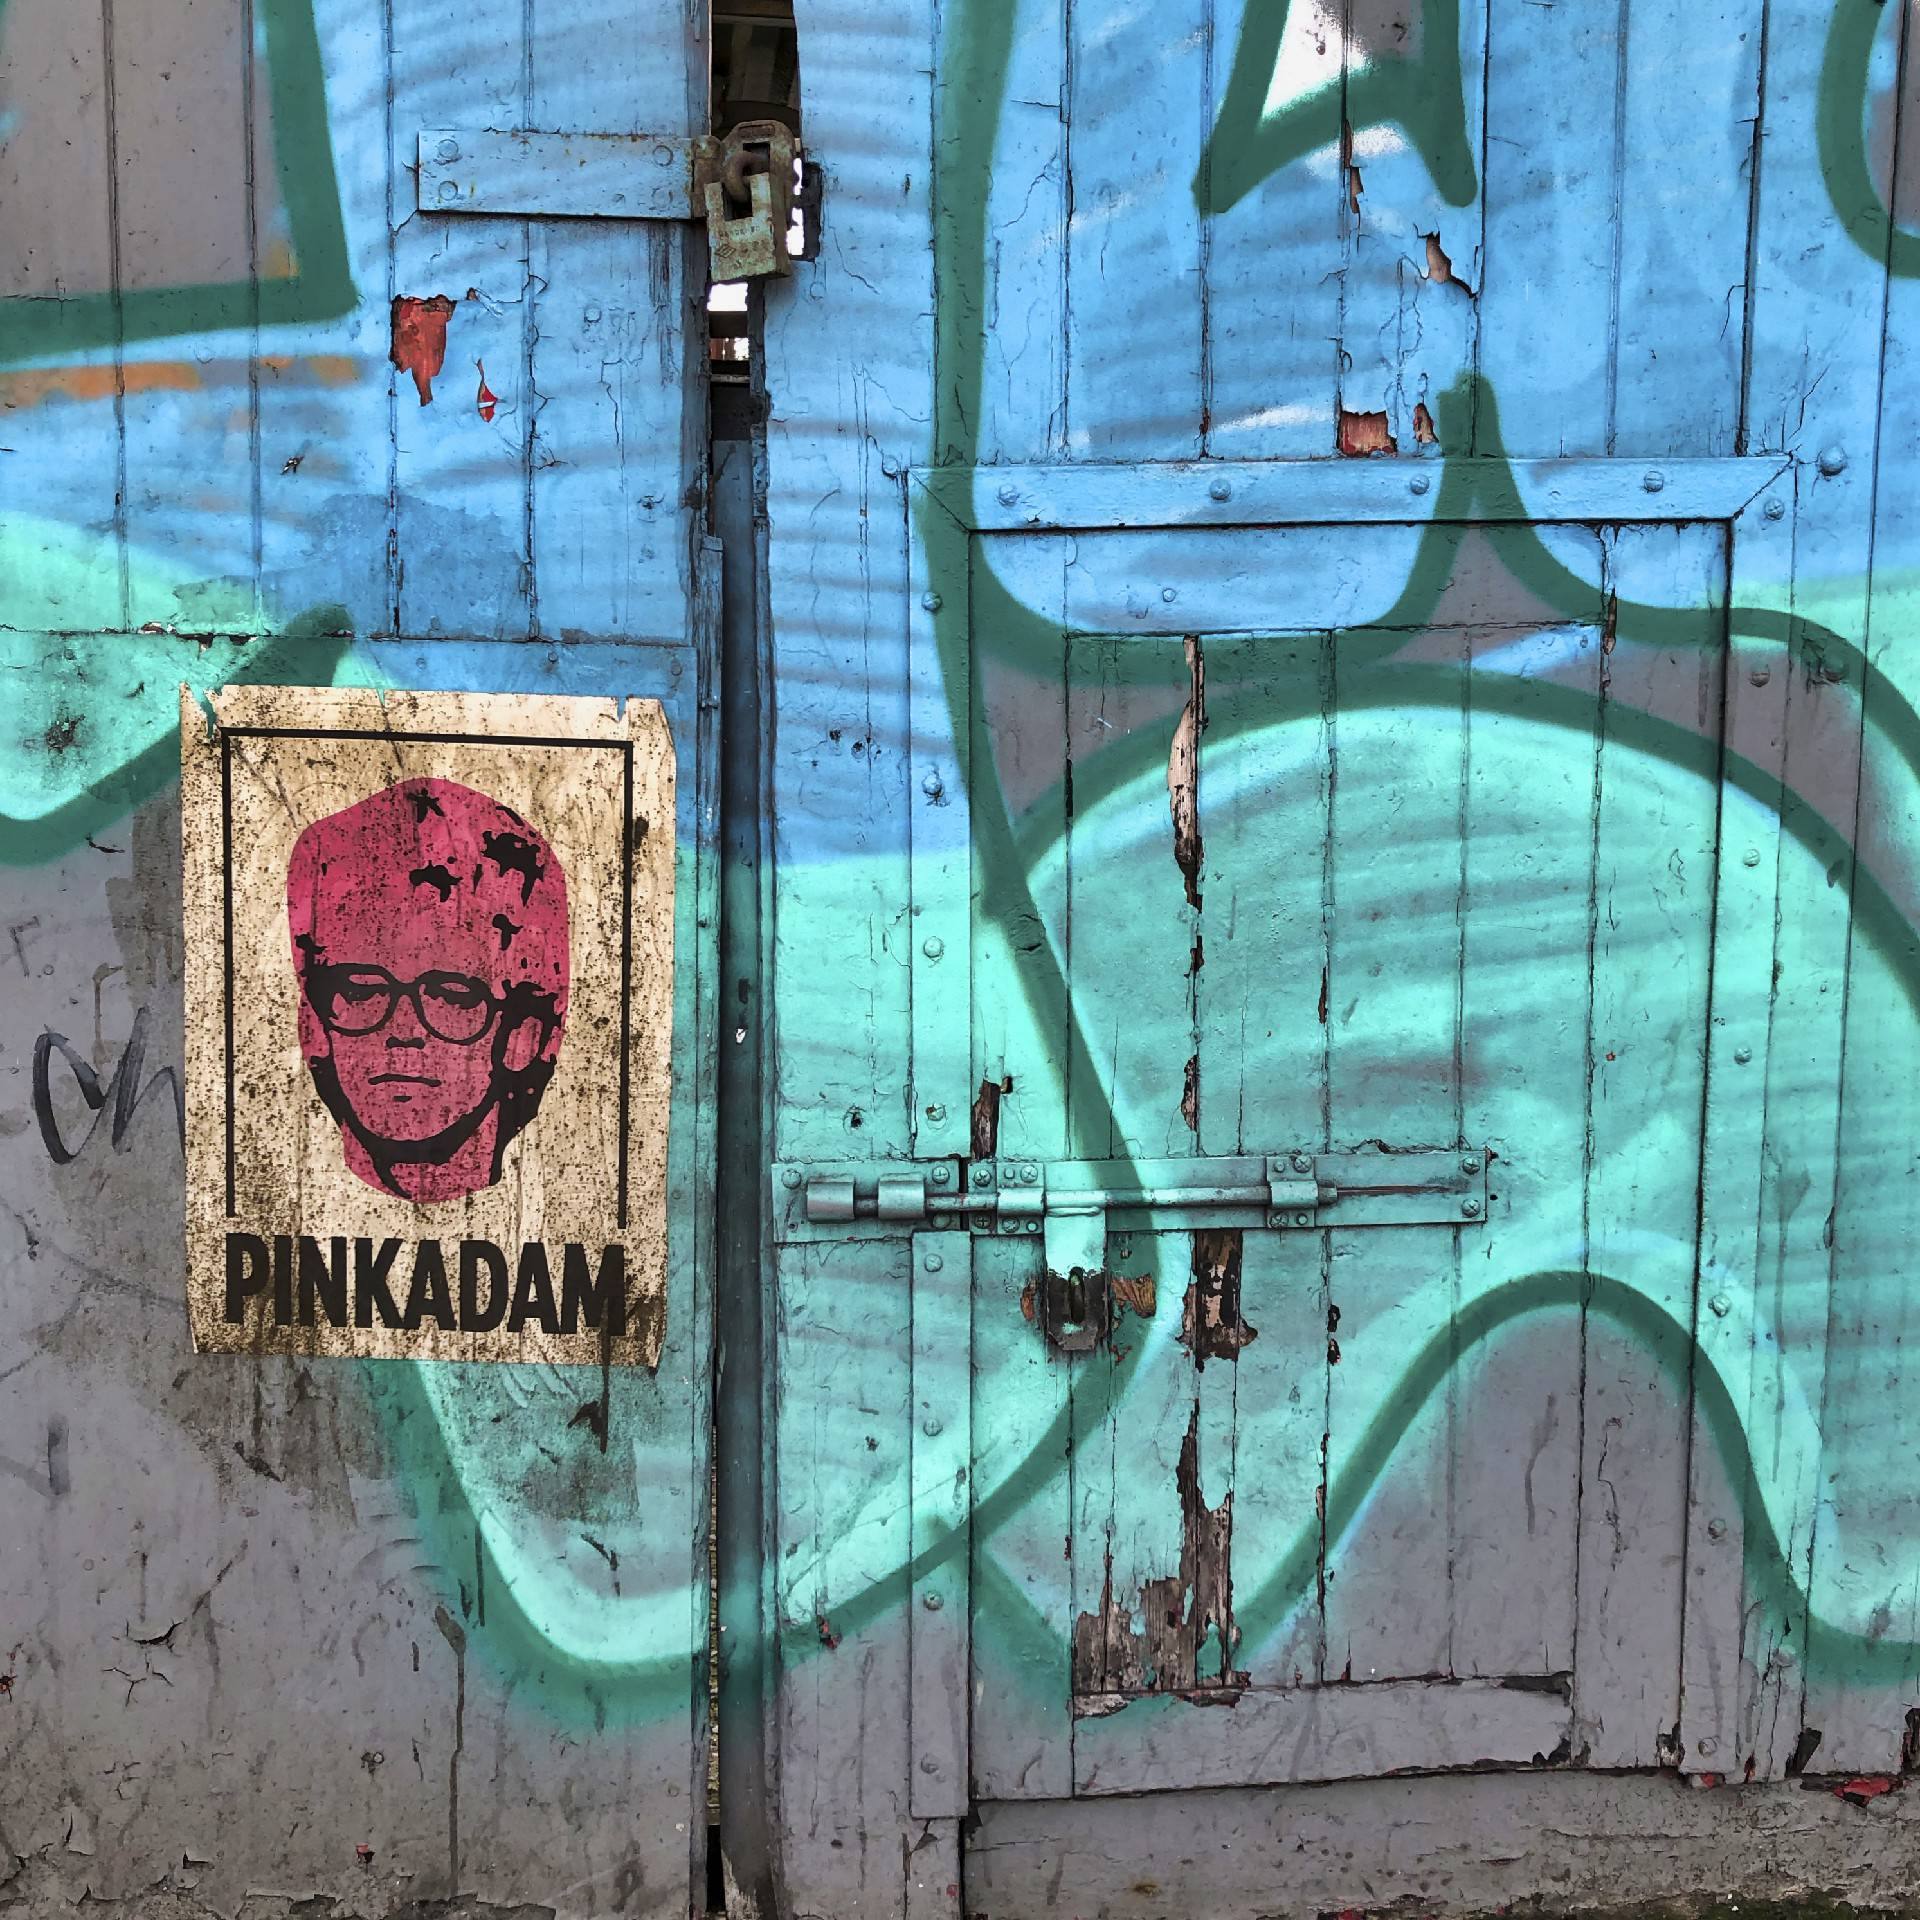 Colorful pinkadam graffiti